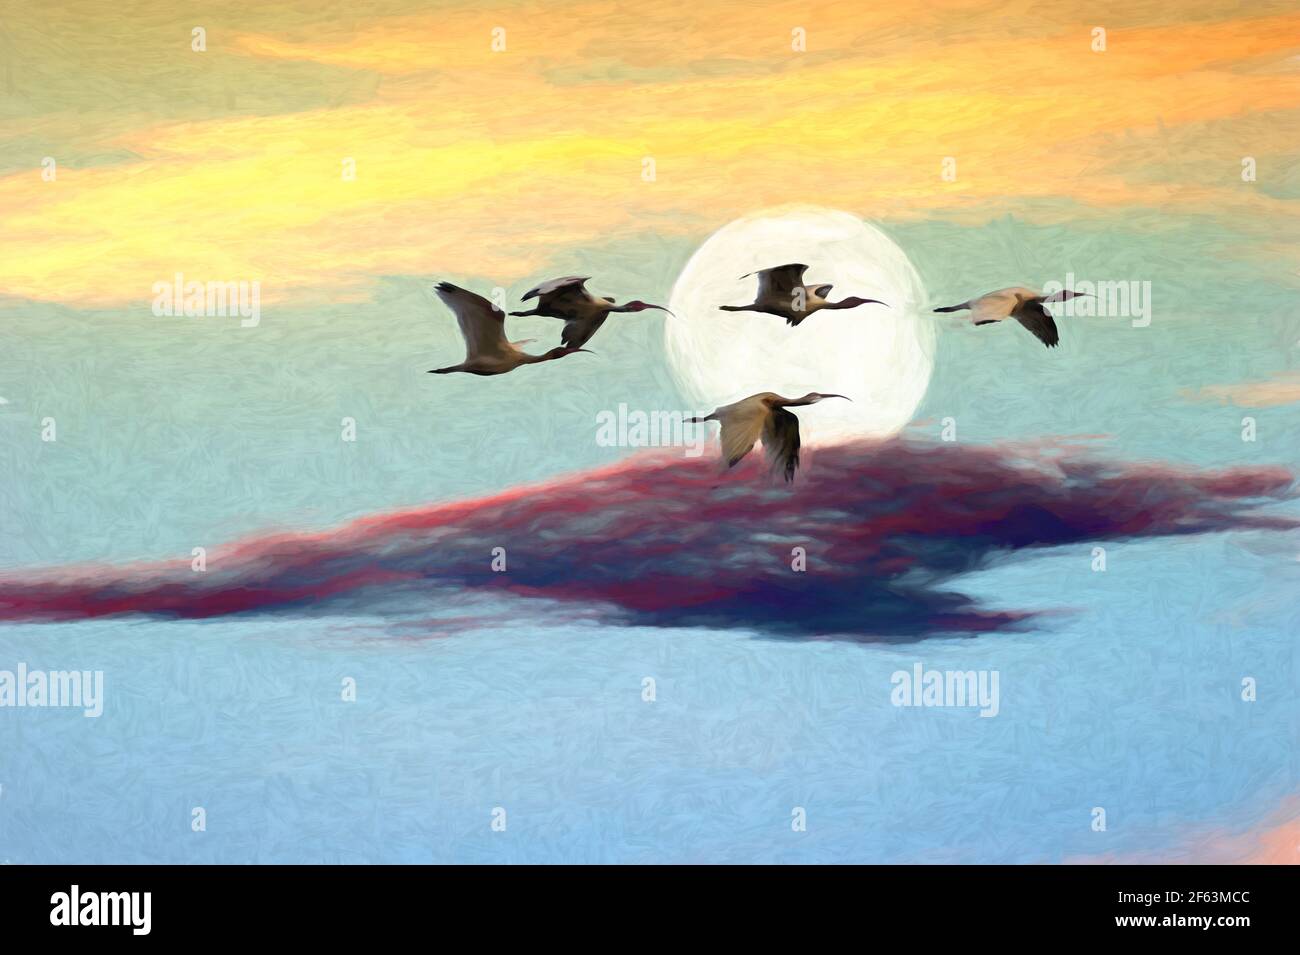 Eine Vogelschar fliegt am Mond vorbei Sonnenuntergang Stockfoto